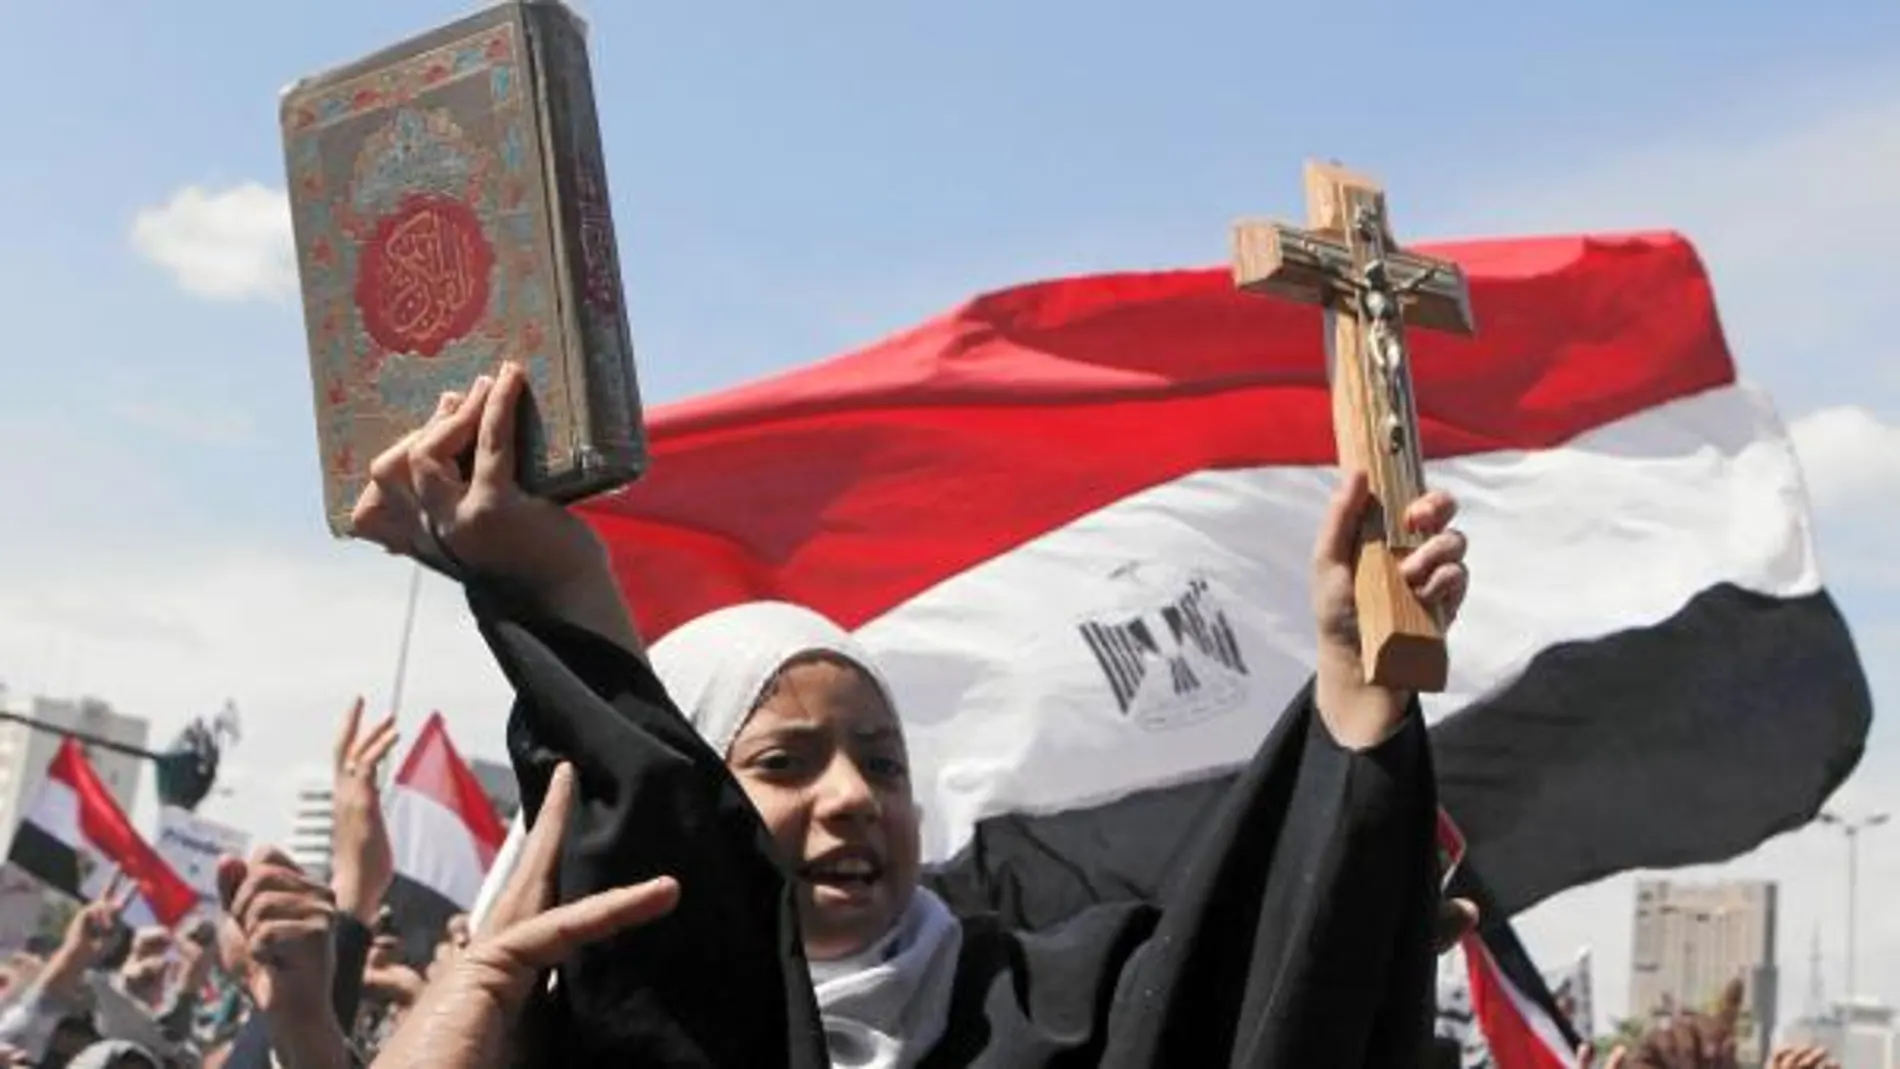 Los símbolos de las dos religiones mayoritarias de Egipto se exhibían ayer en El Cairo juntos por la convivencia